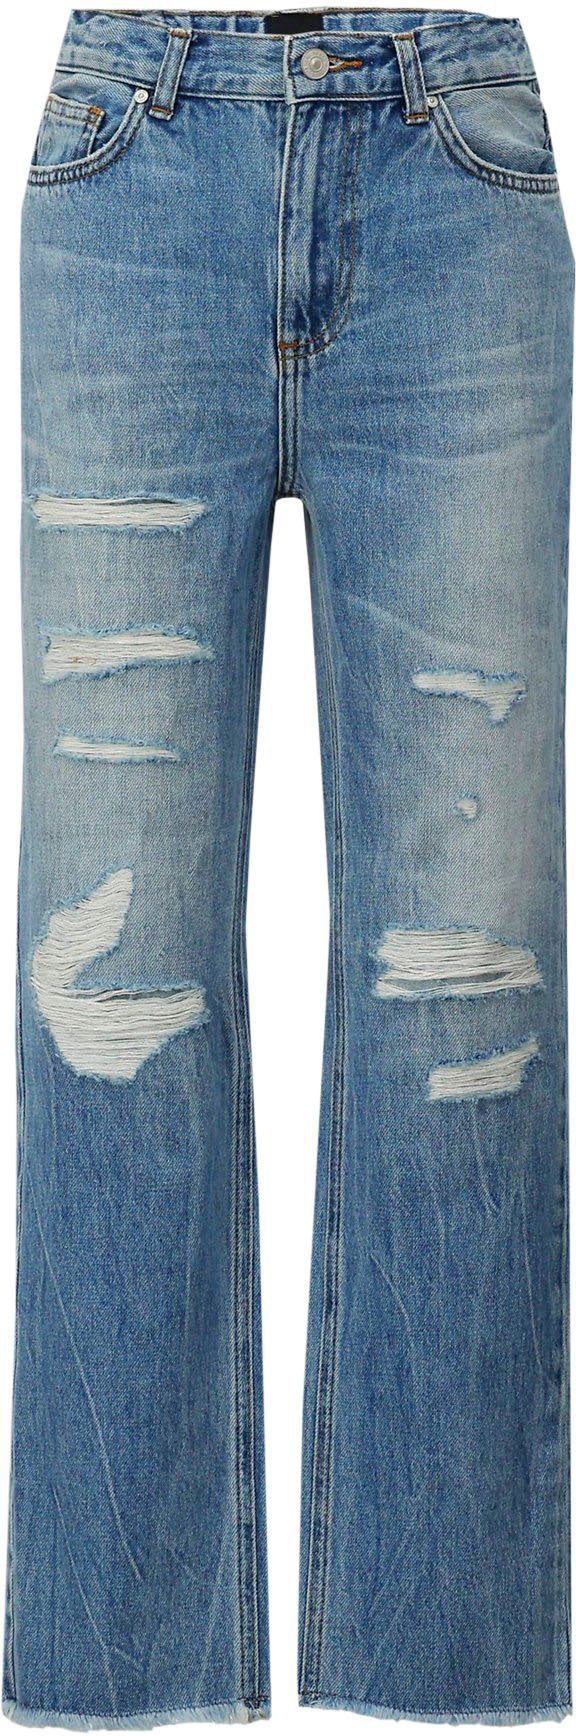 OLIVA LTB GIRLS Destroyed-Jeans für